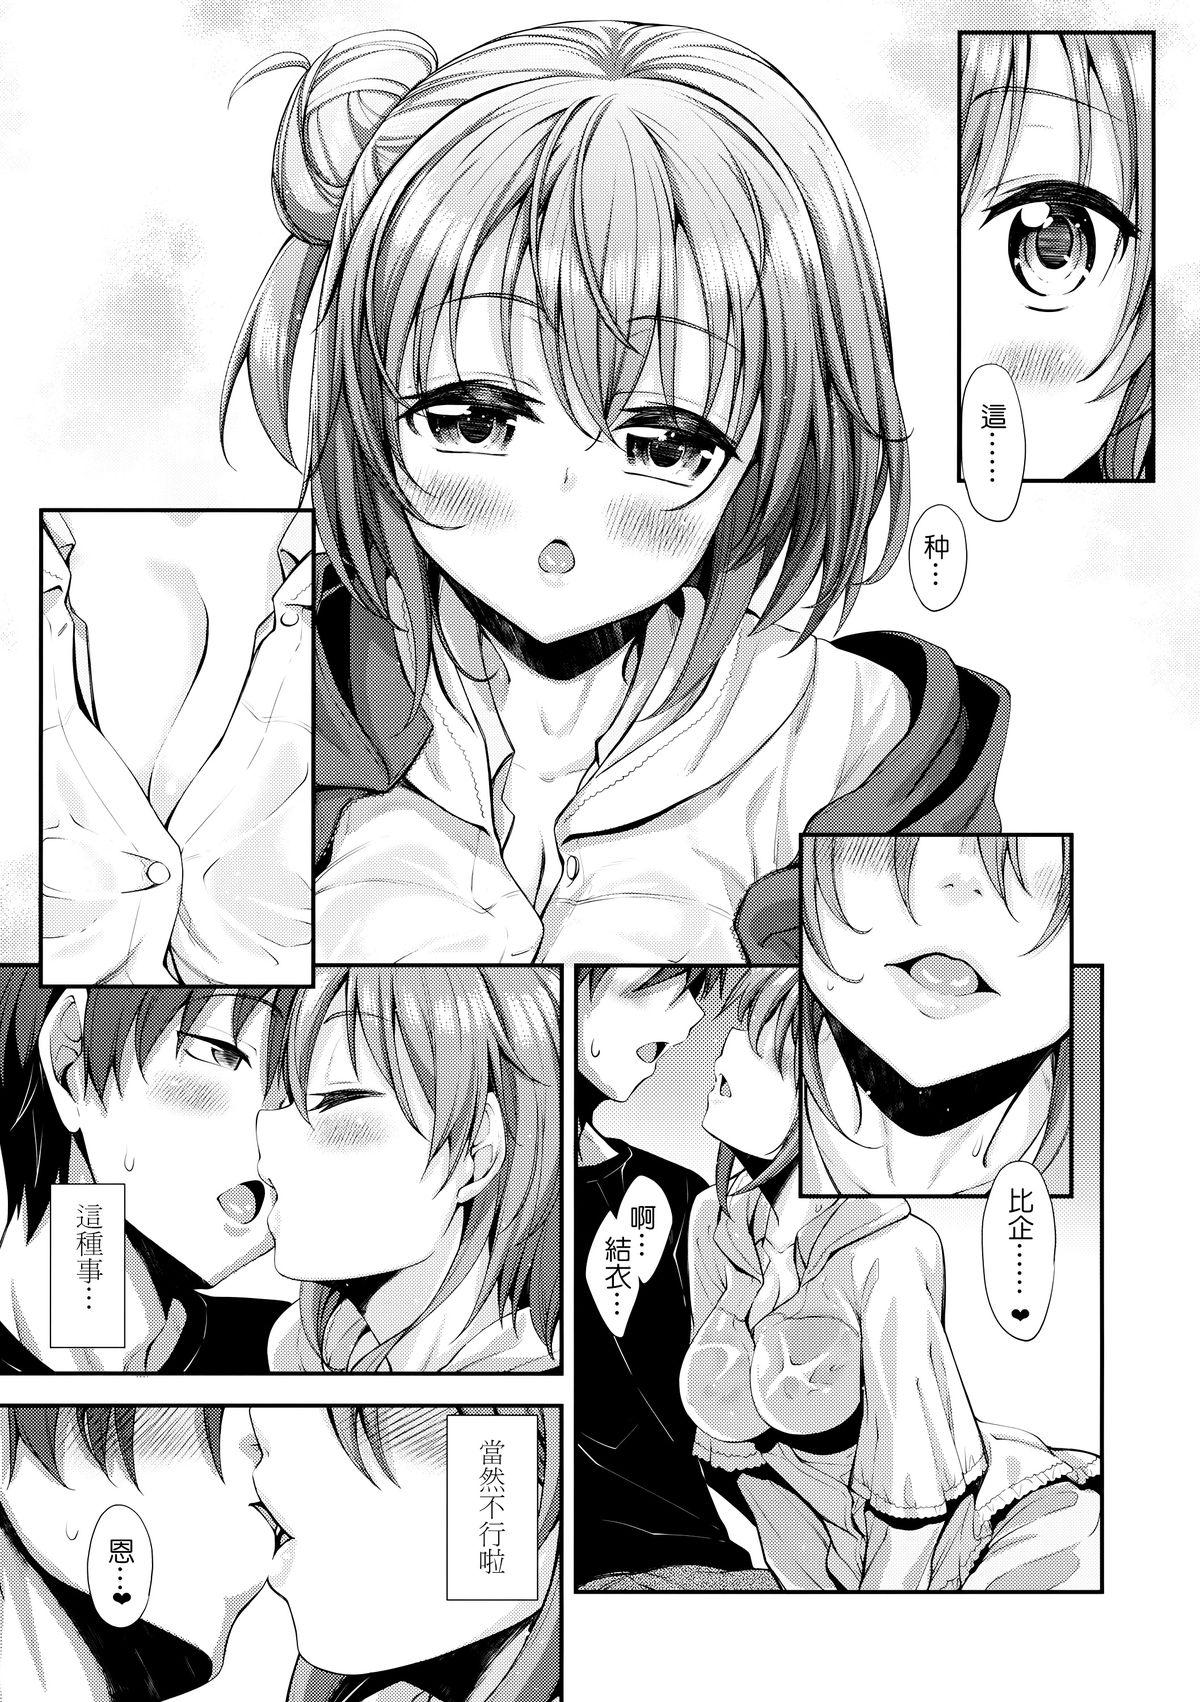 Teenage Porn LOVE STORY #01 - Yahari ore no seishun love come wa machigatteiru Bisexual - Page 11